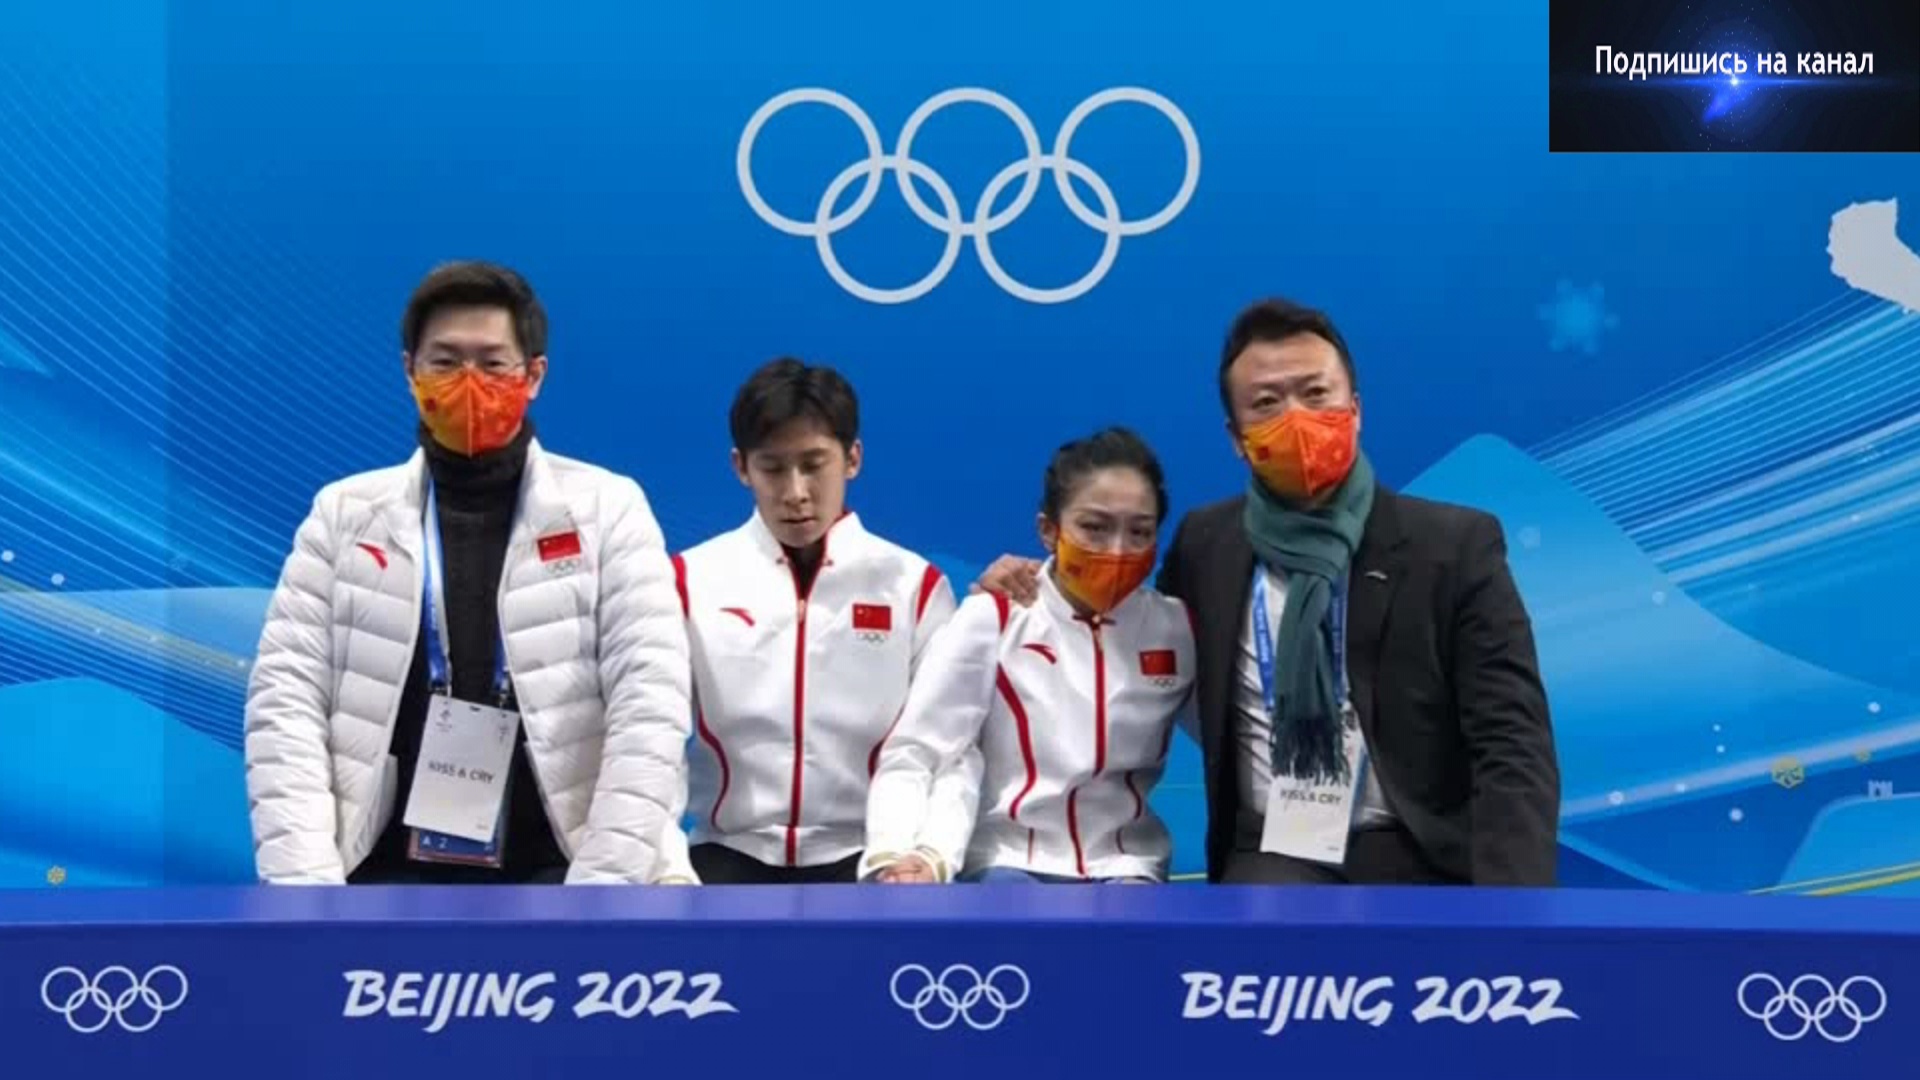 Реакция китайских спортсменов на оценки за свое выступление на Олимпиаде в Пекине19.02.2022